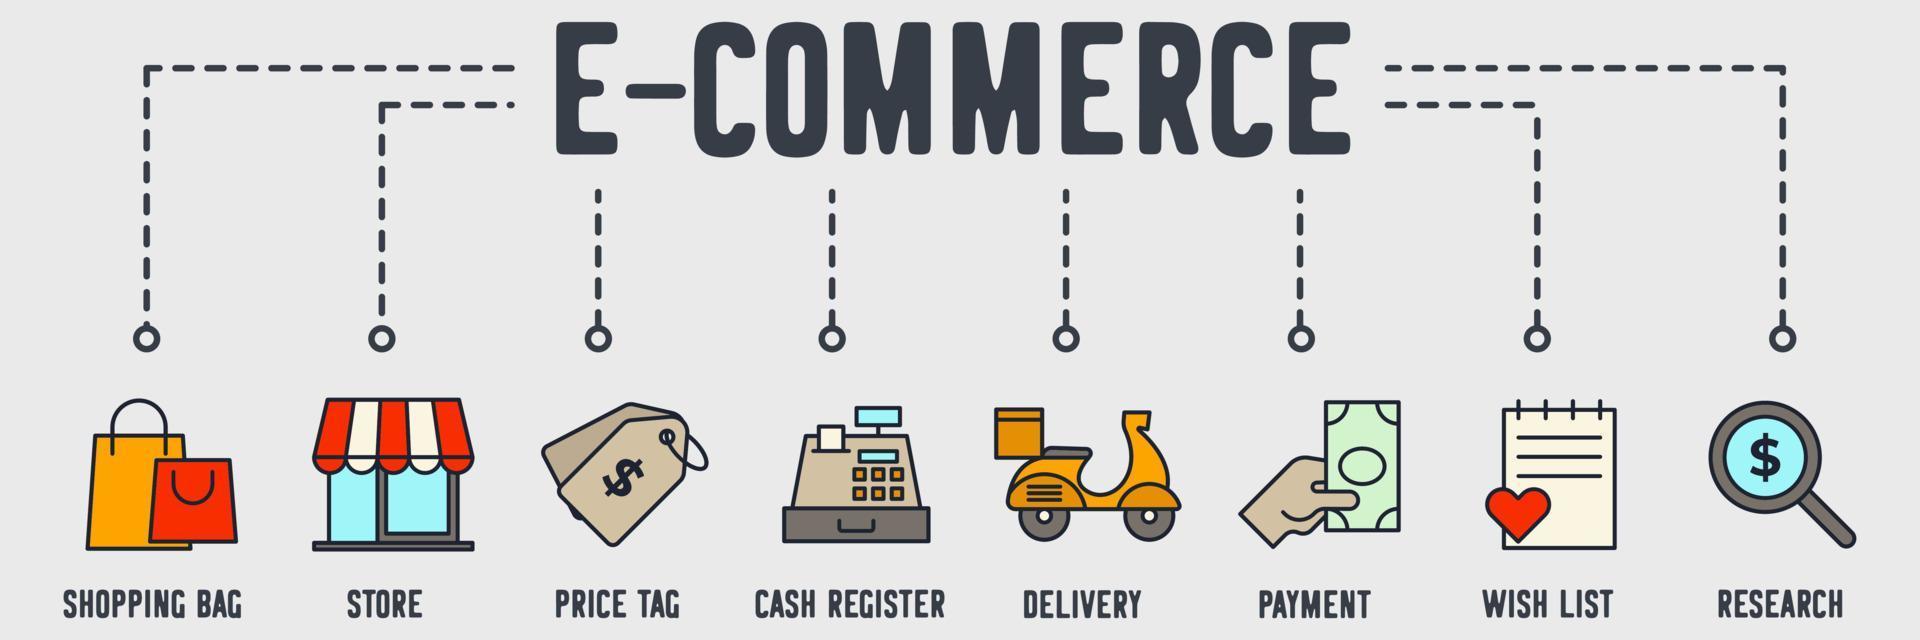 e-commerce online winkelen banner webpictogram. boodschappentas, winkel, prijskaartje, kassa, levering, betaling, verlanglijstje, onderzoek vector illustratie concept.